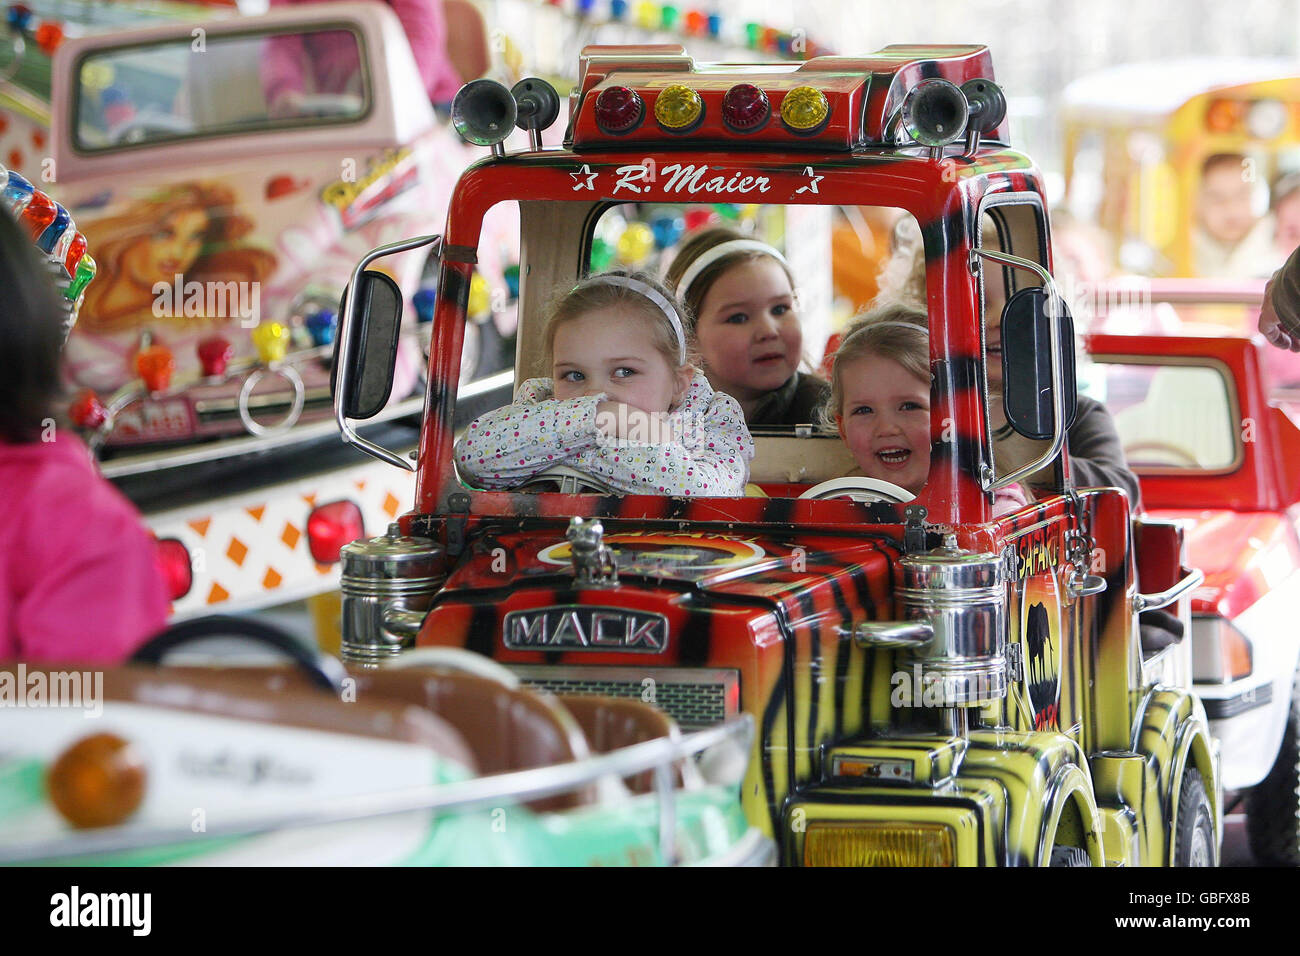 Kinder auf einer Fahrt auf dem Merrion Square in Dublin. Die Funfair ist Teil des laufenden St. Patrick's Festivals, das bis März 17 läuft. Stockfoto